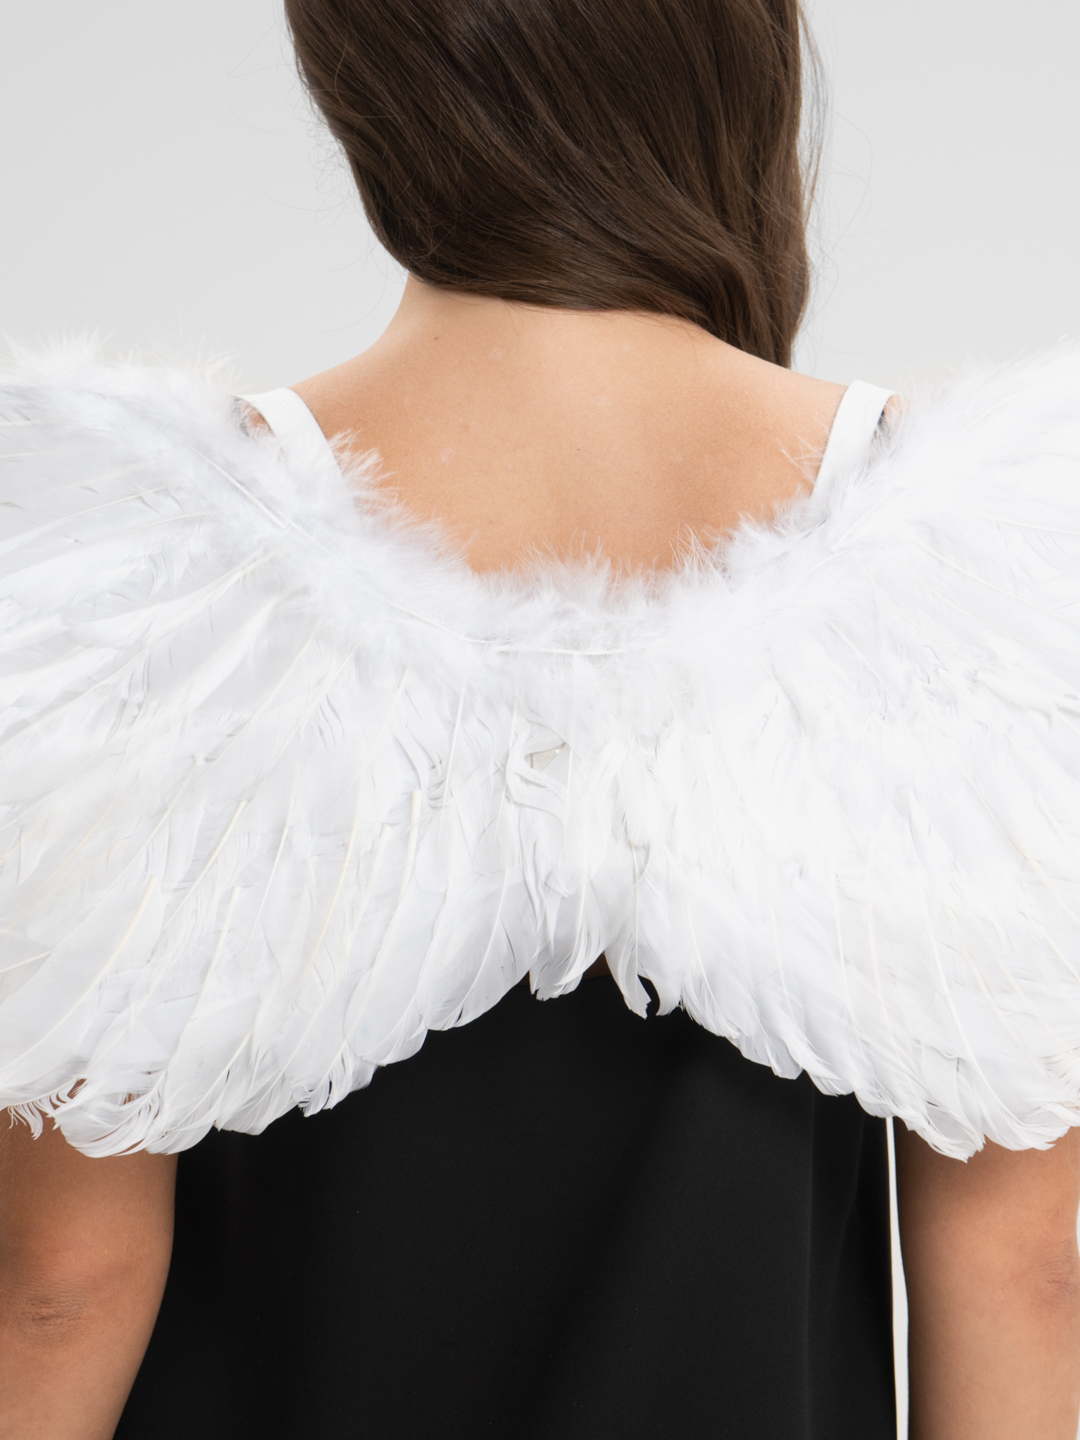 Как сделать крылышки для ангелочка самостоятельно